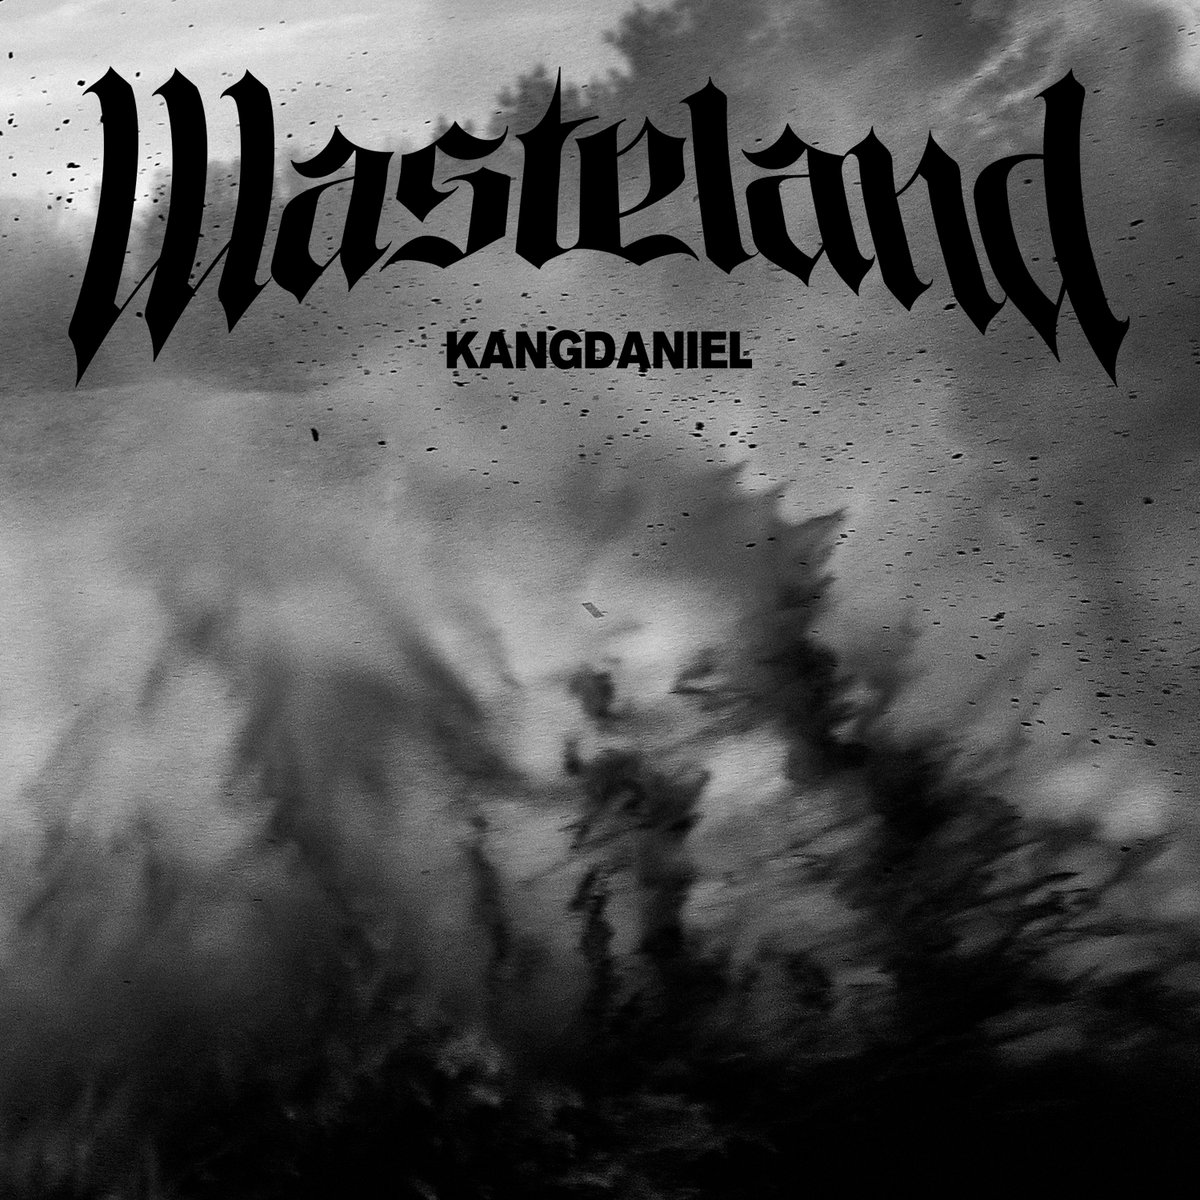 강다니엘 (KANGDANIEL)
4TH MINI ALBUM <REALIEZ> 'Wasteland' OUT NOW!

KANGDANIEL.lnk.to/Wasteland

#강다니엘 #KANGDANIEL
#REALIEZ #Wasteland